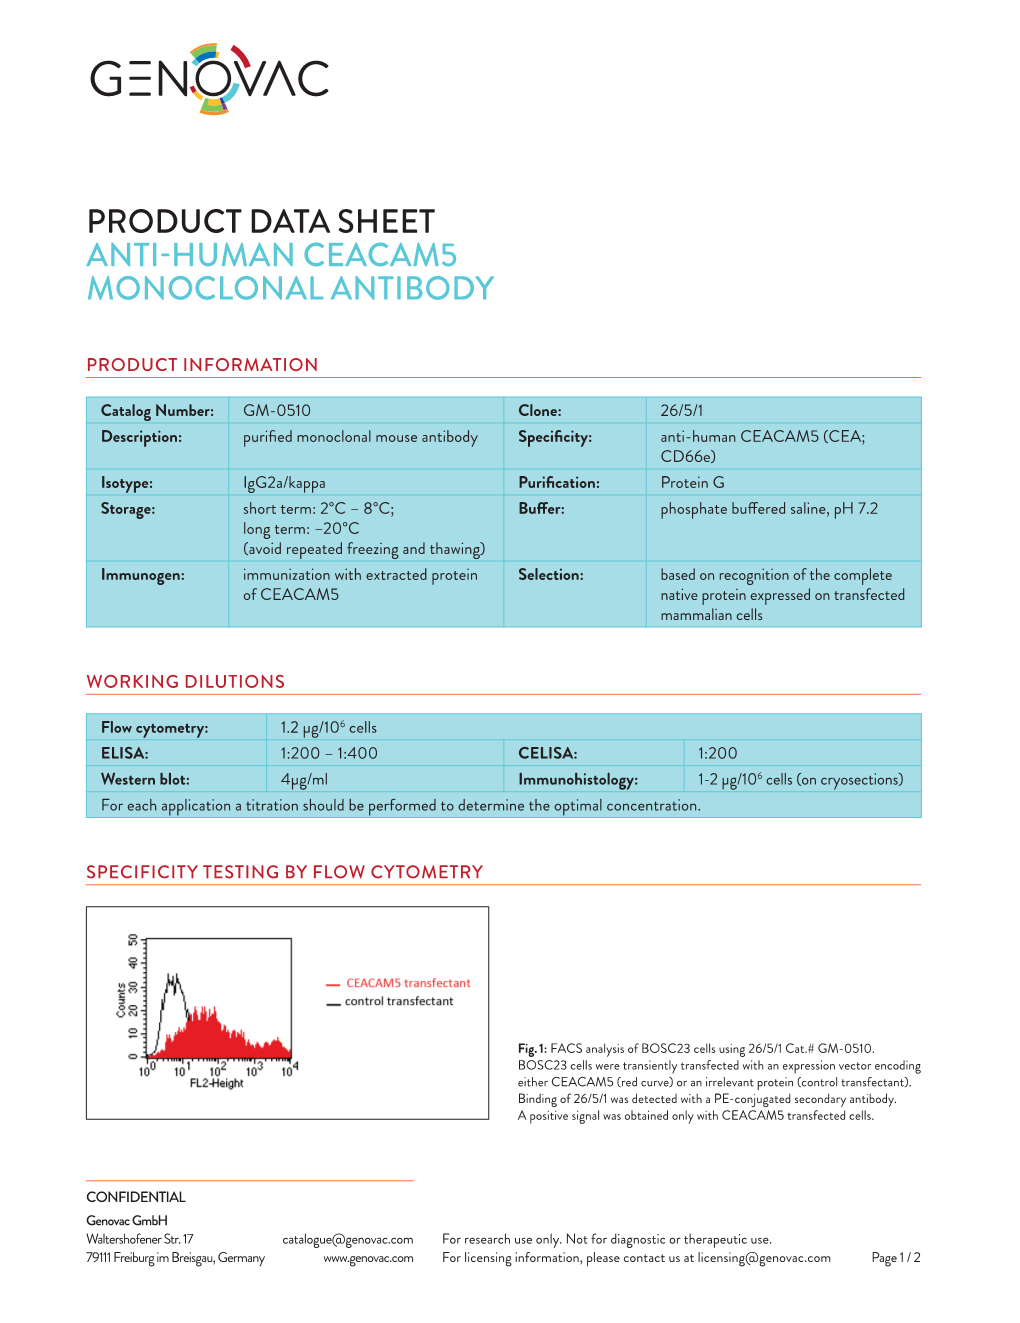 Product Data Sheet Anti-Human Ceacam5 Monoclonal Antibody